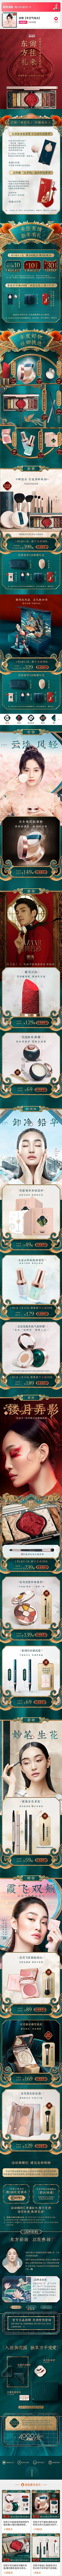 lnyoung7采集到化妆品/保养品页面